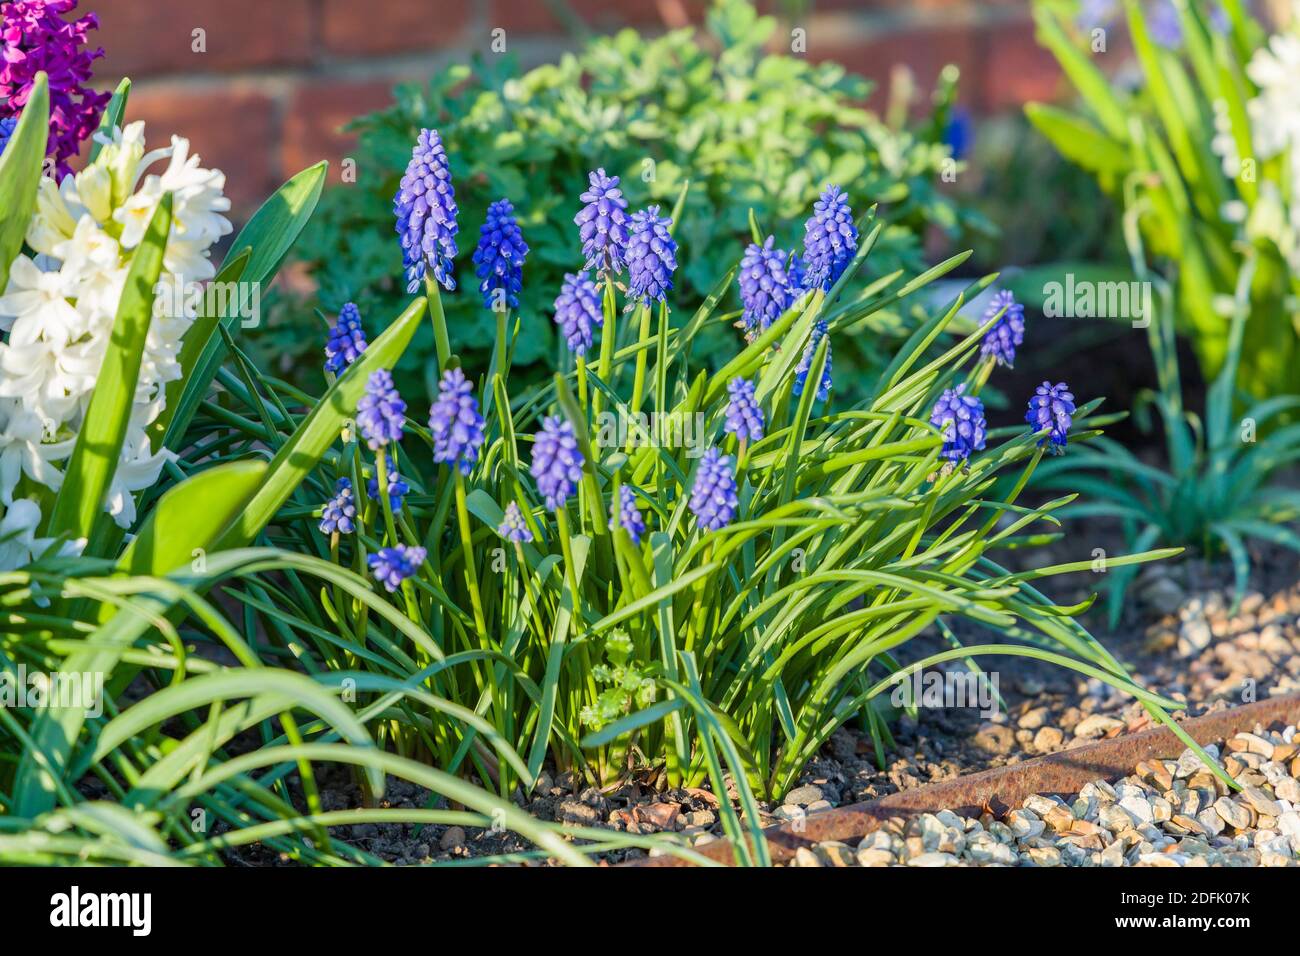 Jardin de printemps frontière de fleur avec la fleur bleu muscari armeniacum ou des jacinthes de raisin arménien dans un jardin, Royaume-Uni Banque D'Images